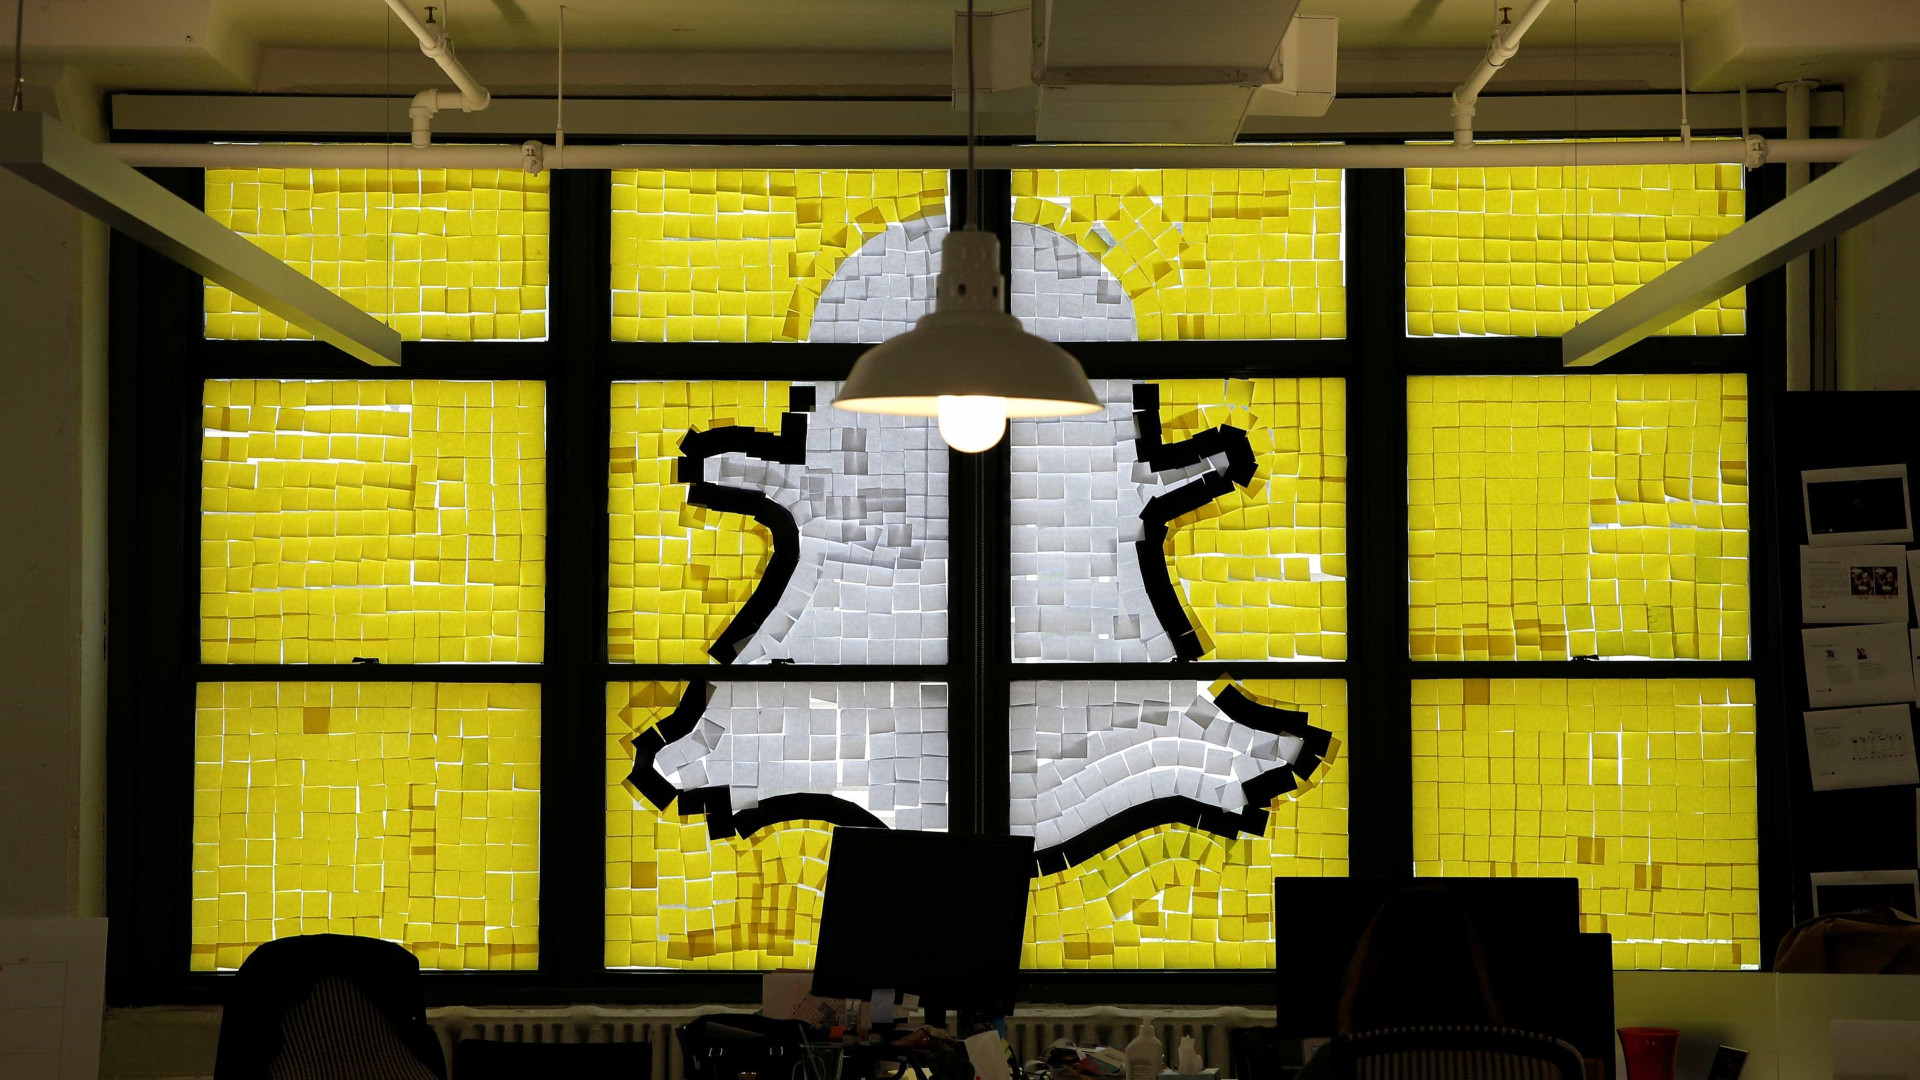 Tentando recuperar usuários, Snapchat mudará design